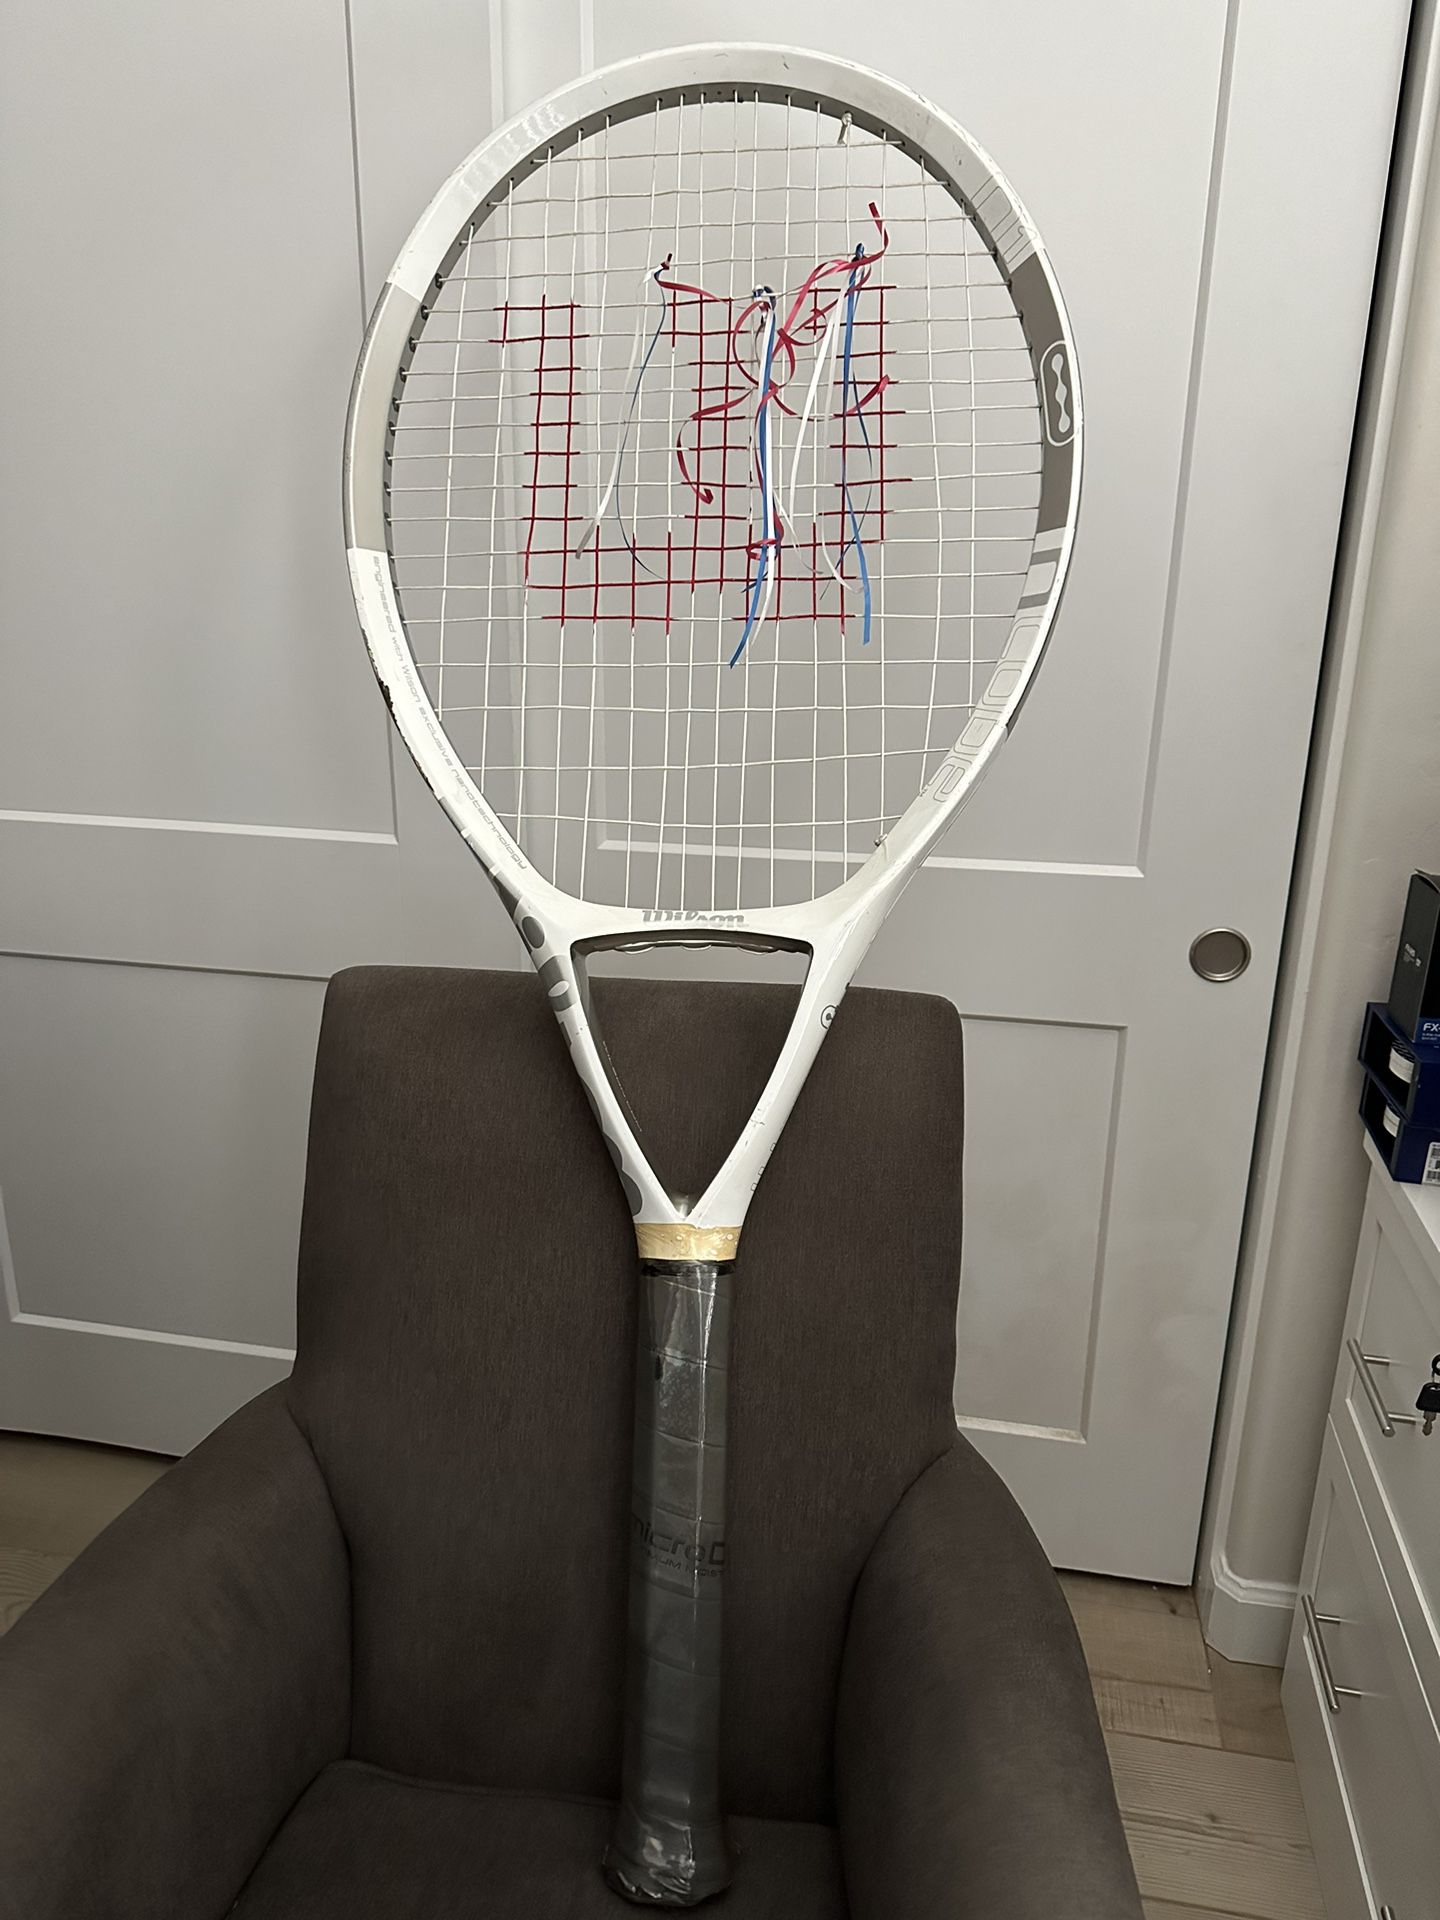 Huge Promotional Advertising Wilson Tennis Racket 